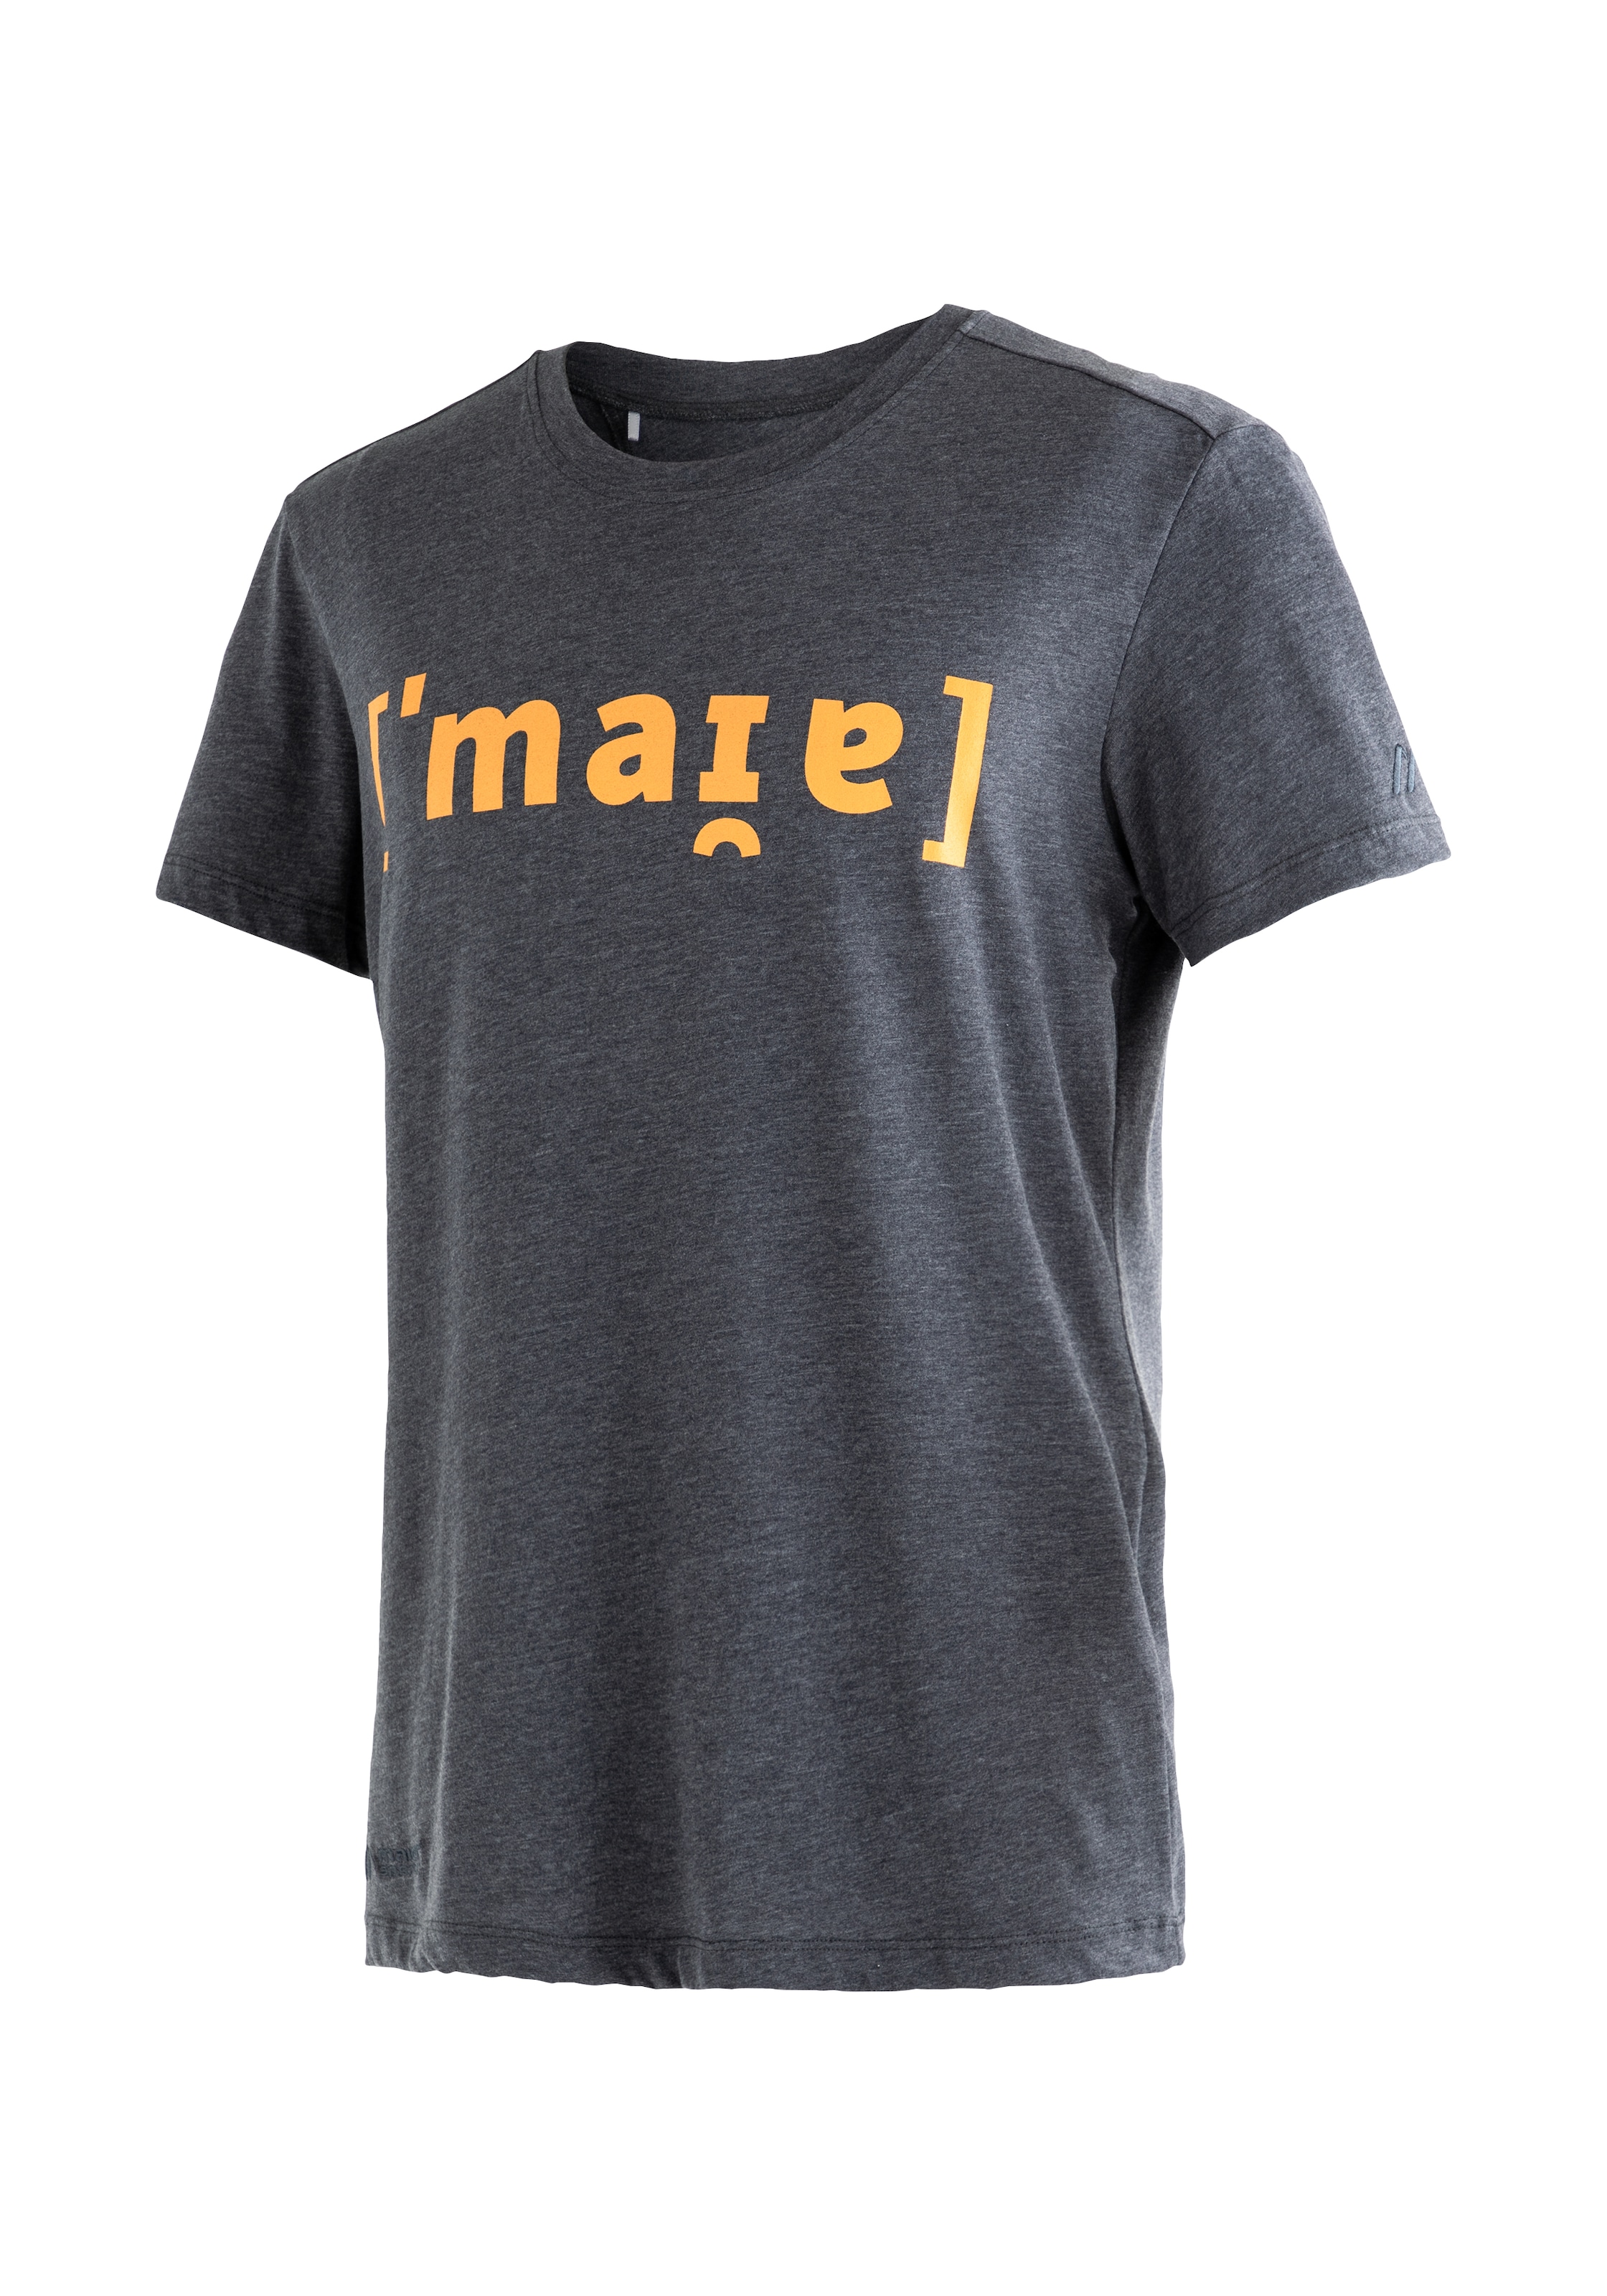 Flg T-Shirt - online günstige shoppen Mode